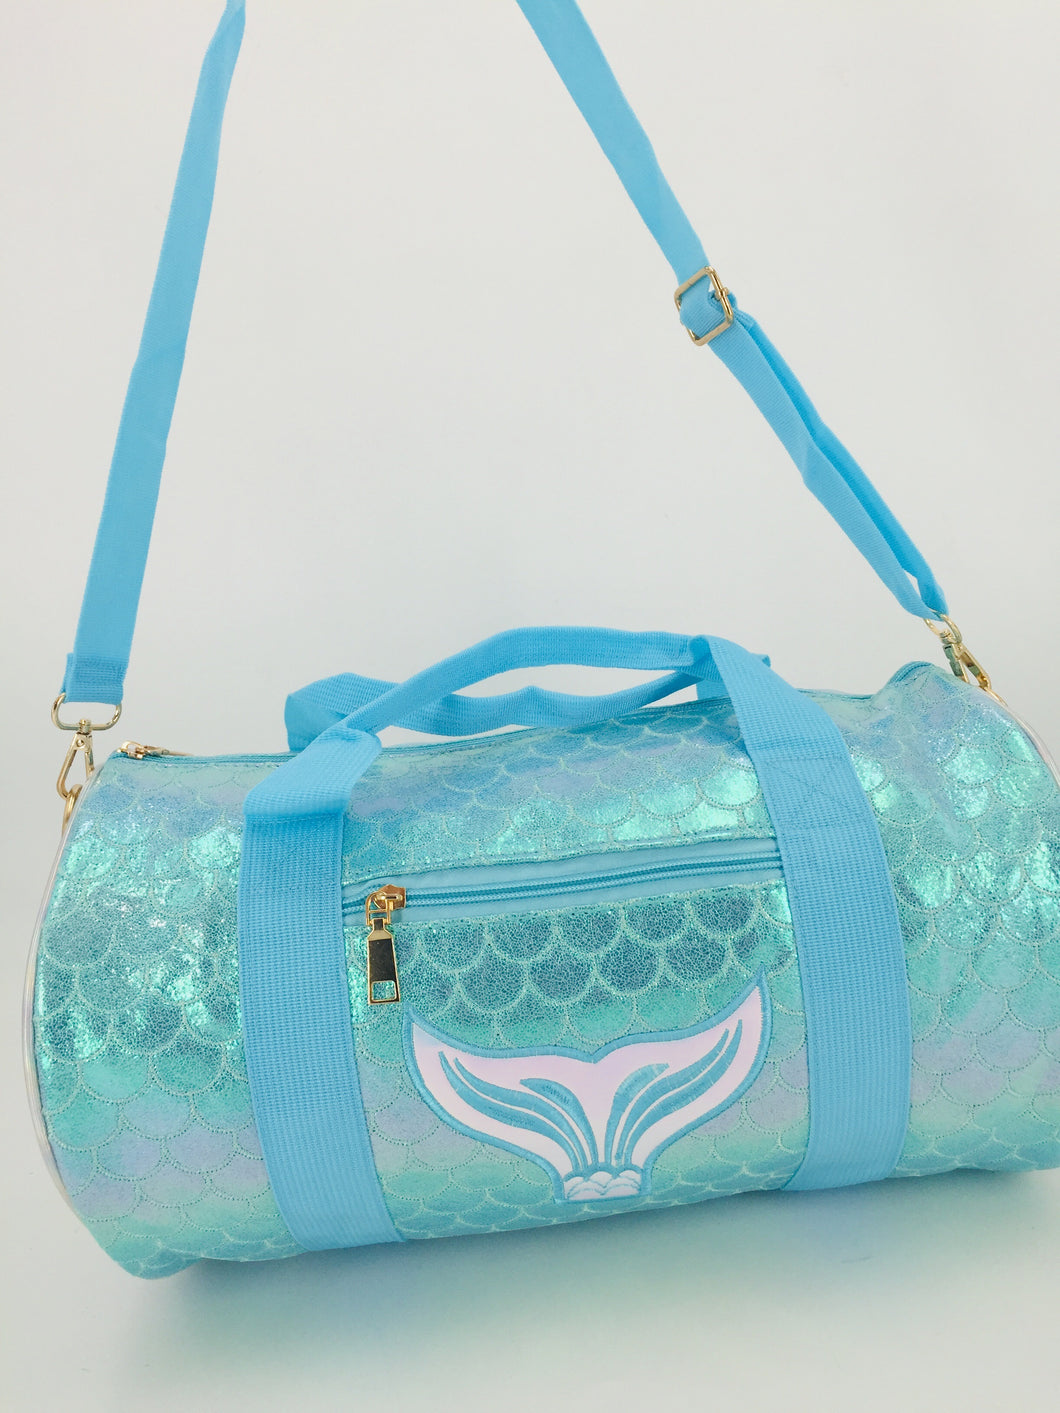 LXBA 19040-816 maleta cola de sirena azul